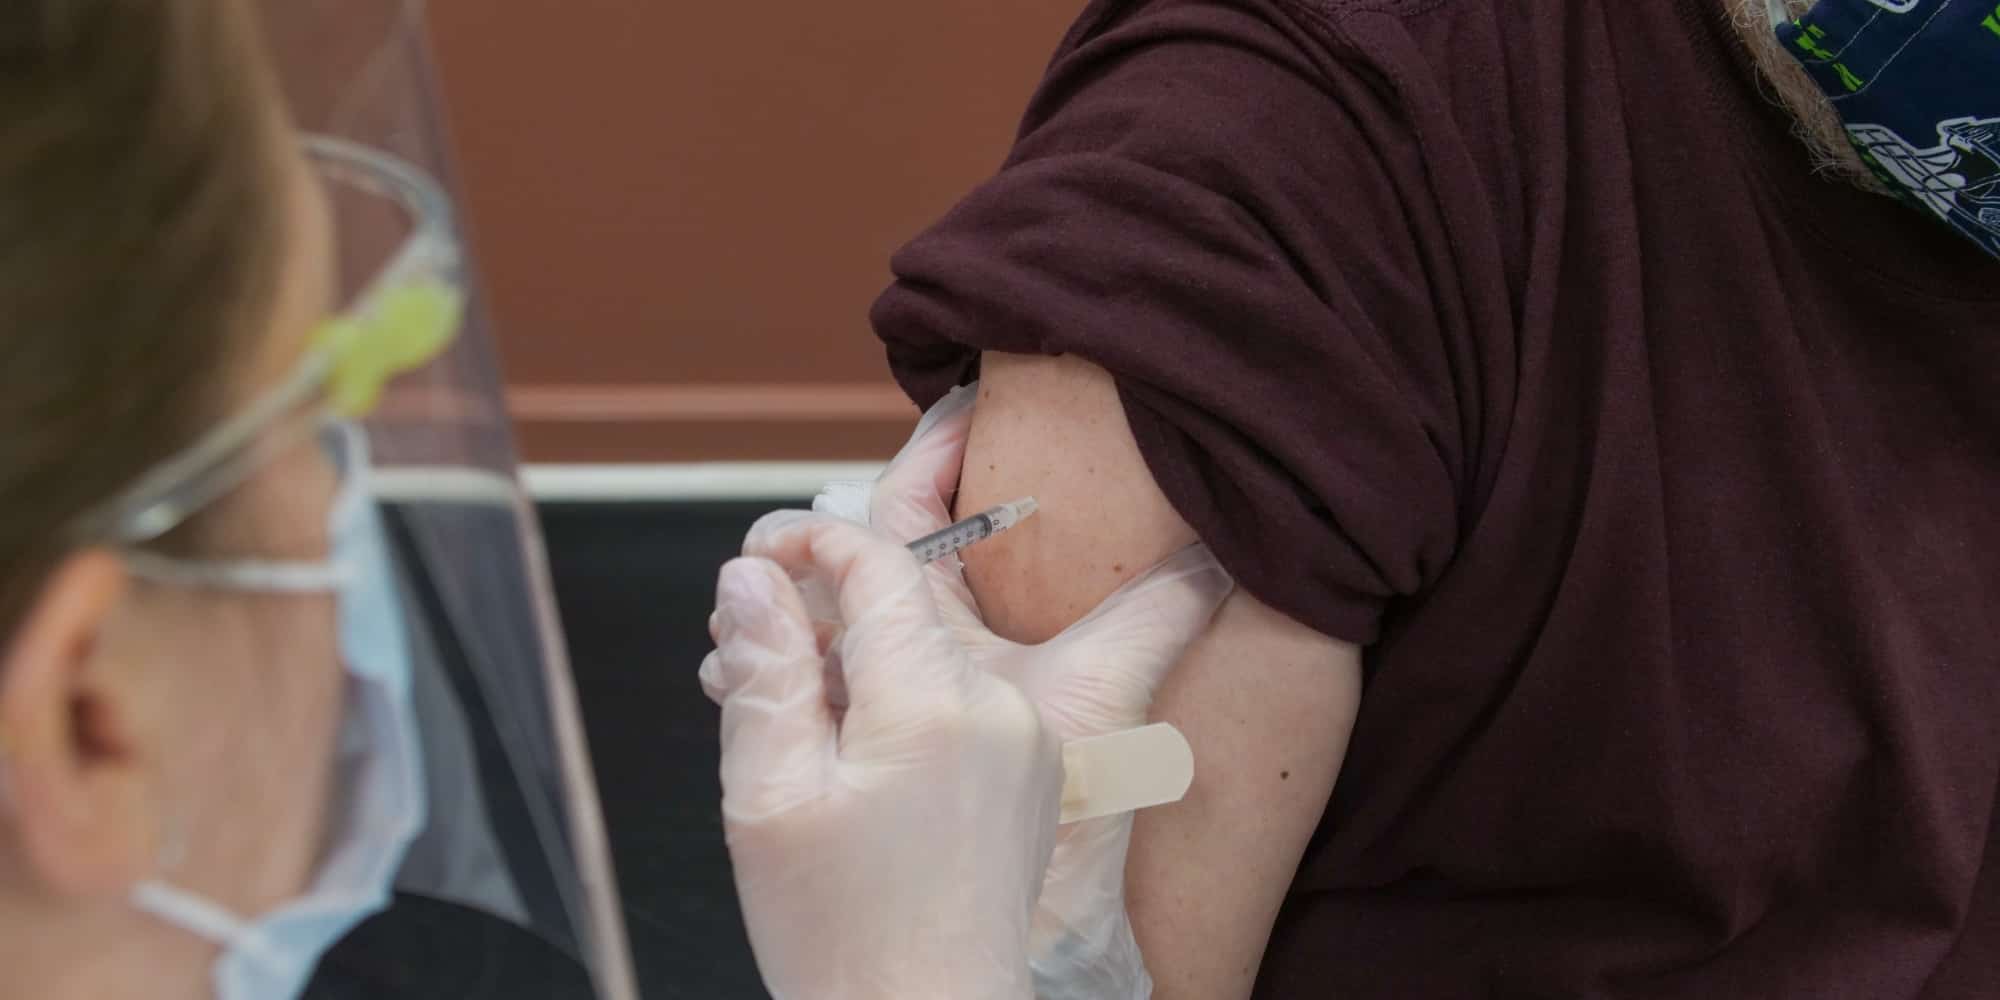 εμβολιο - Εμβόλια για όλους: Πρωτοβουλία ενημέρωσης για τον εμβολιασμό στις ευάλωτες ομάδες